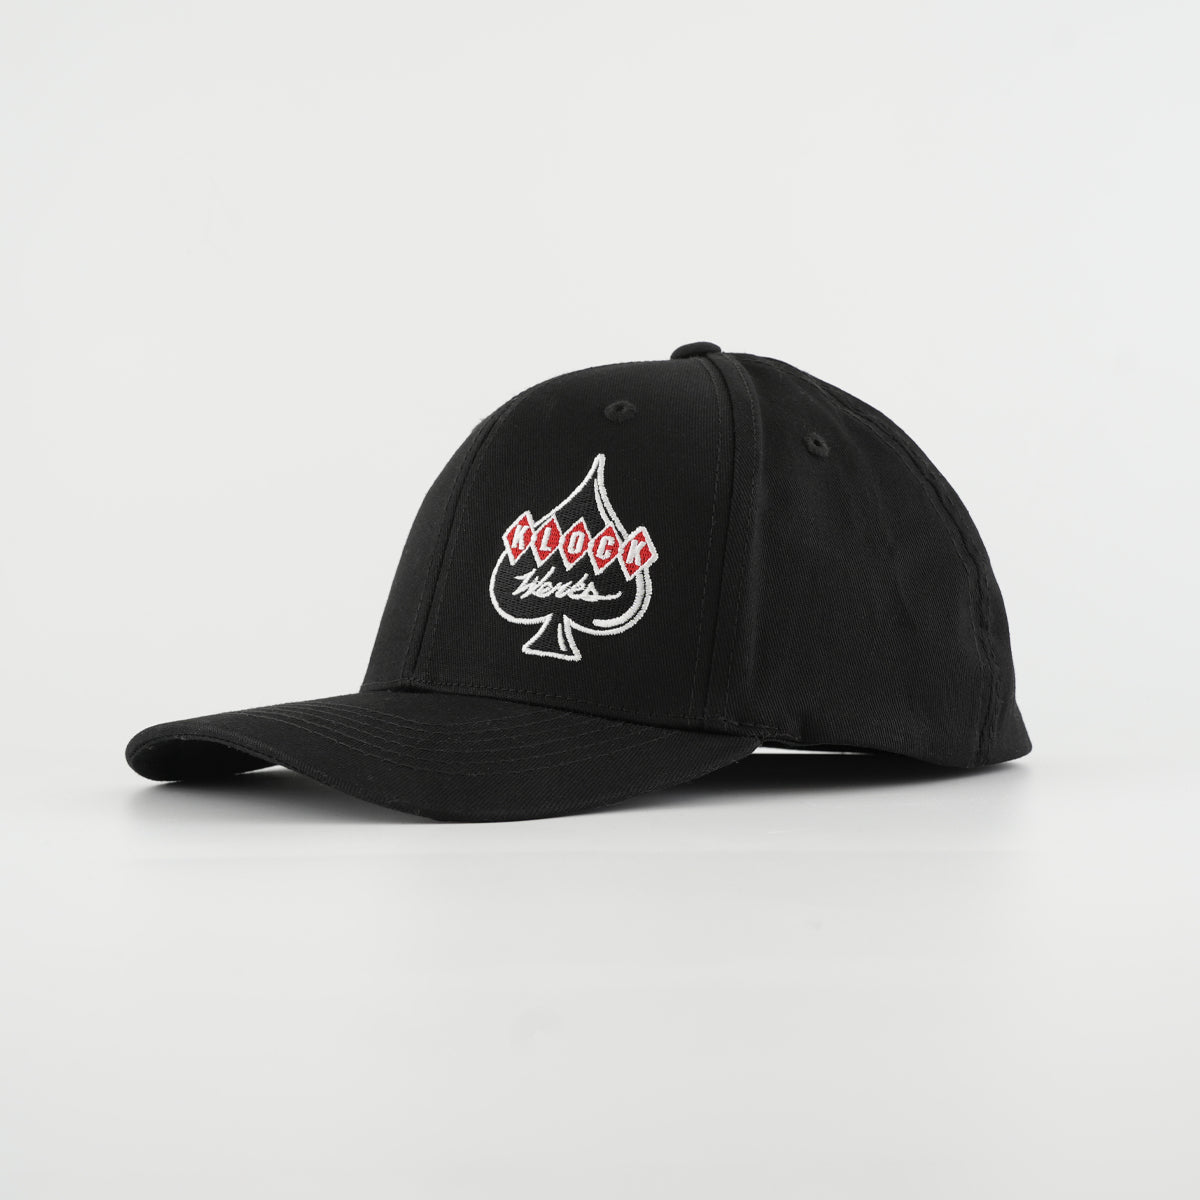 Klock Werks Offset Logo Embroidered Hat